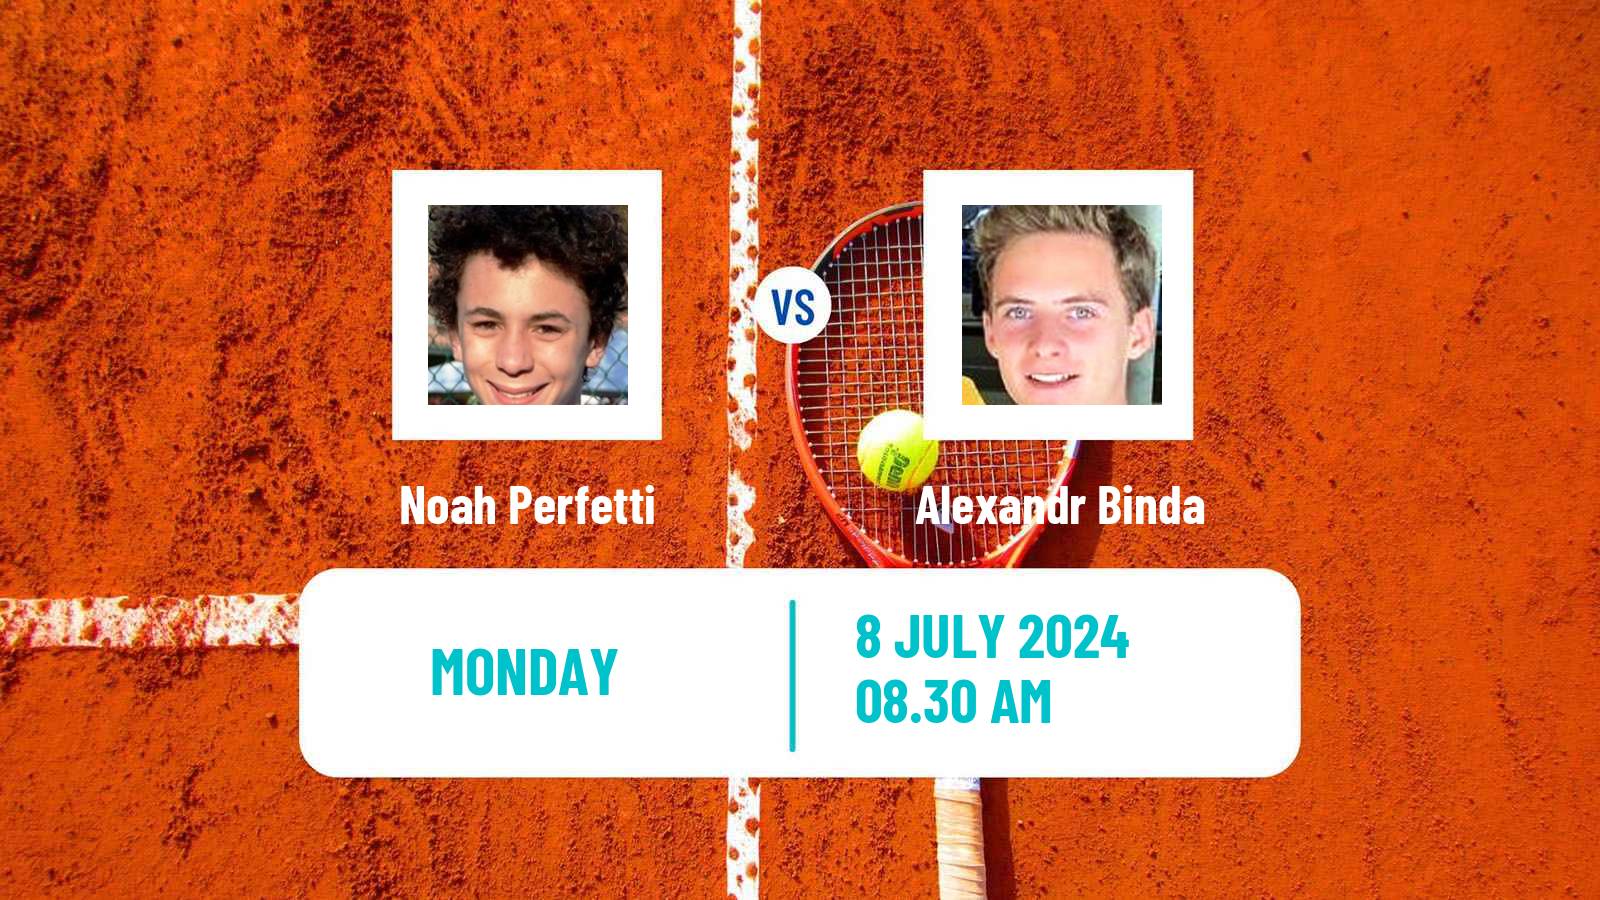 Tennis ITF M25 Padova Men Noah Perfetti - Alexandr Binda